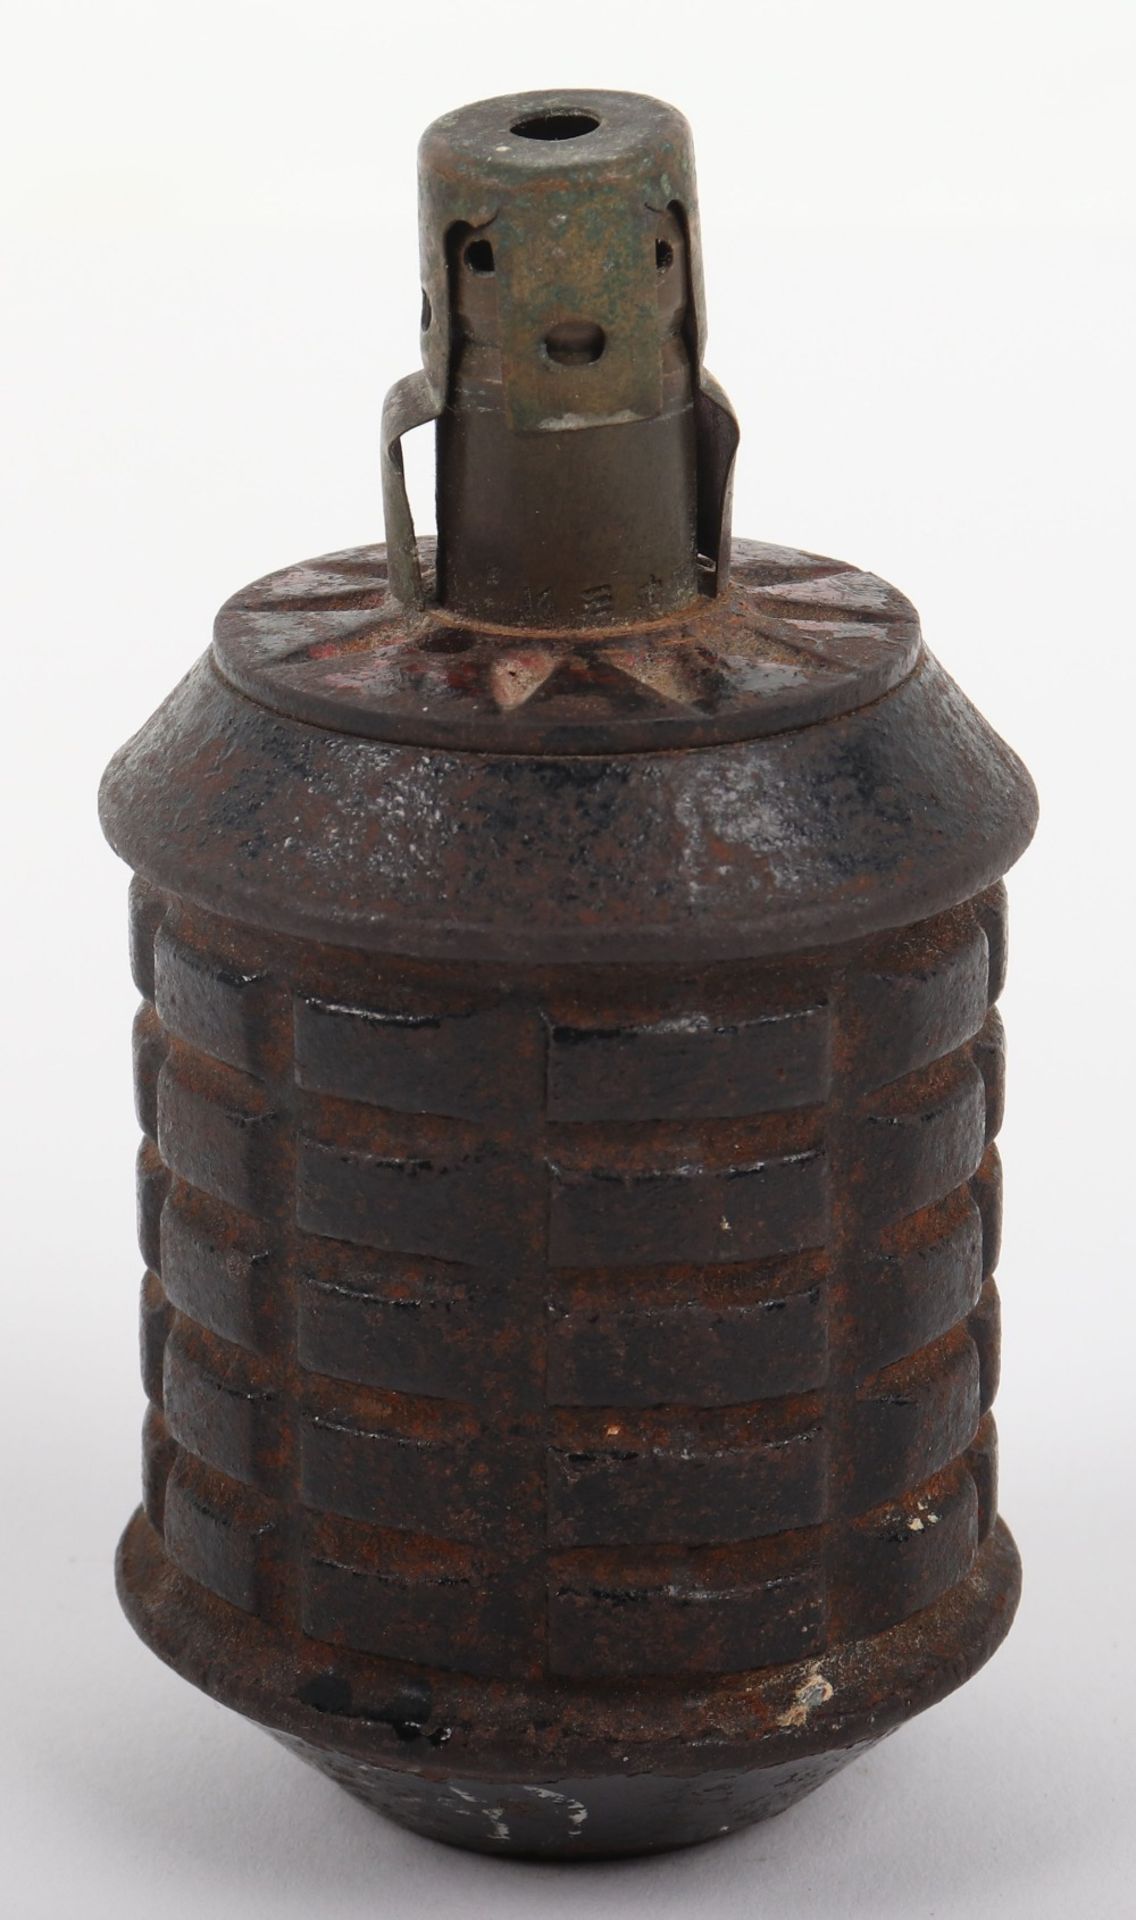 Inert WW2 Japanese Type 97 Hand Grenade - Image 2 of 5